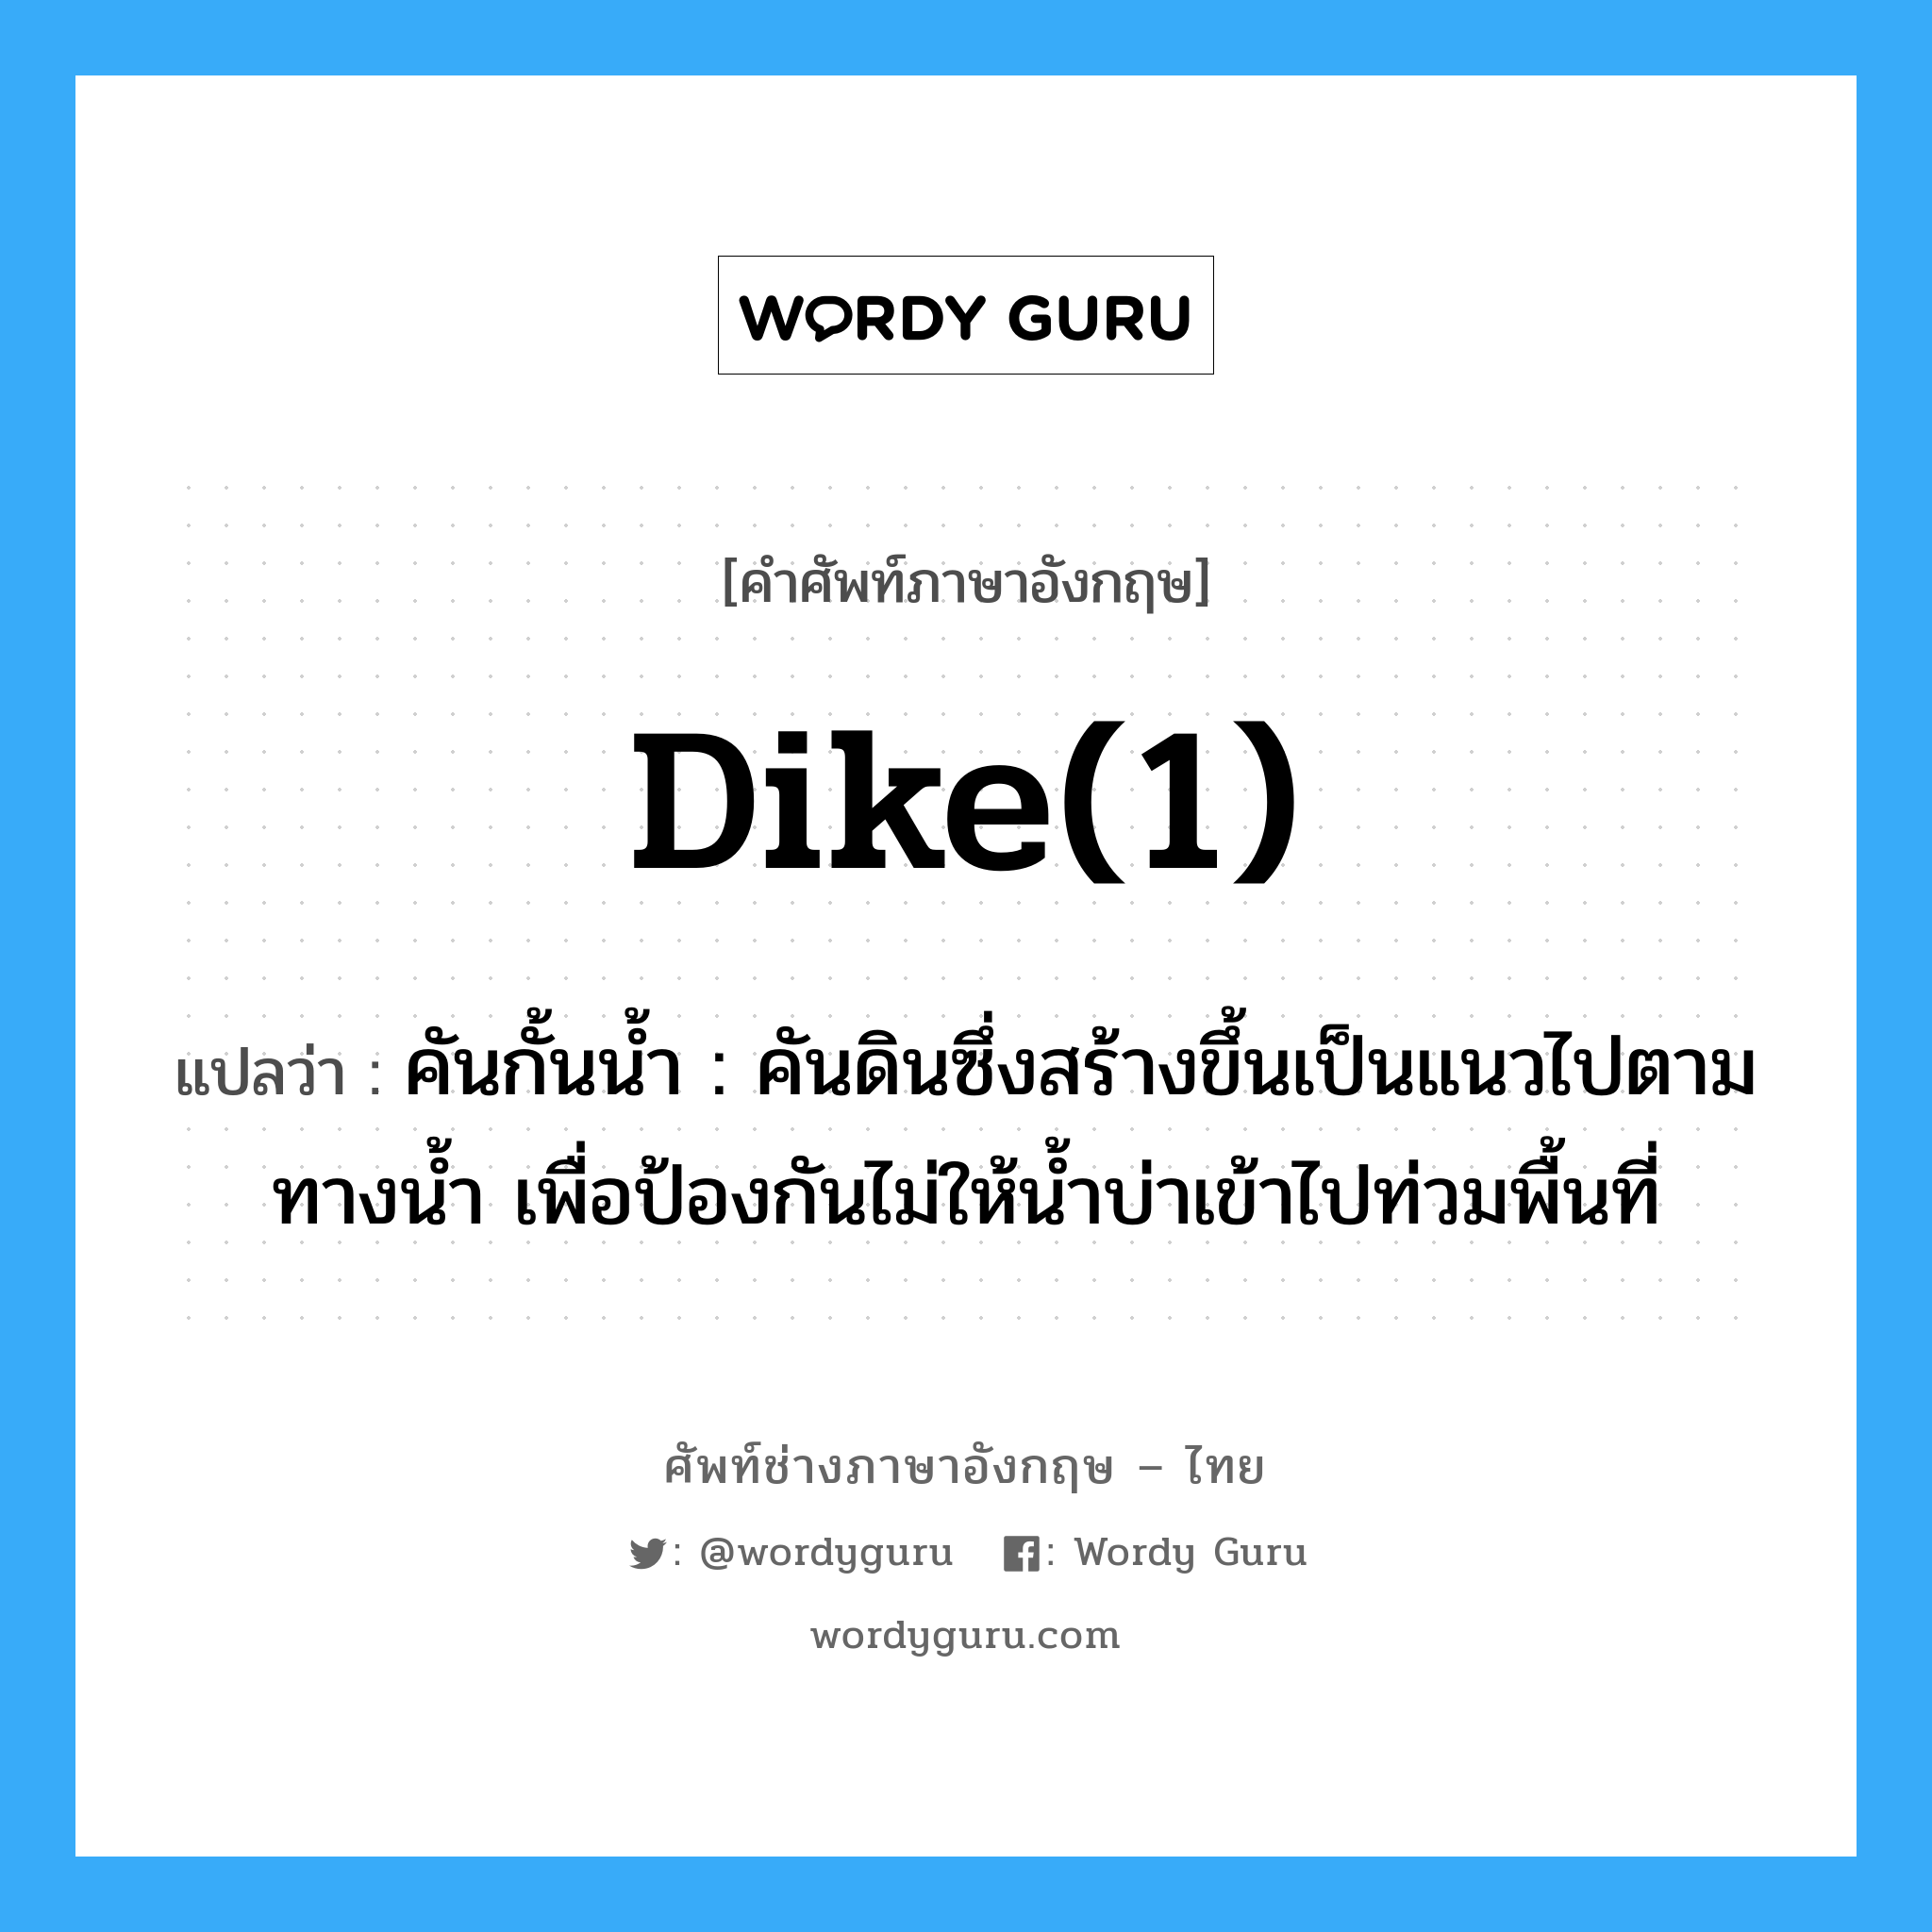 dike(1) แปลว่า?, คำศัพท์ช่างภาษาอังกฤษ - ไทย dike(1) คำศัพท์ภาษาอังกฤษ dike(1) แปลว่า คันกั้นน้ำ : คันดินซึ่งสร้างขึ้นเป็นแนวไปตามทางน้ำ เพื่อป้องกันไม่ให้น้ำบ่าเข้าไปท่วมพื้นที่